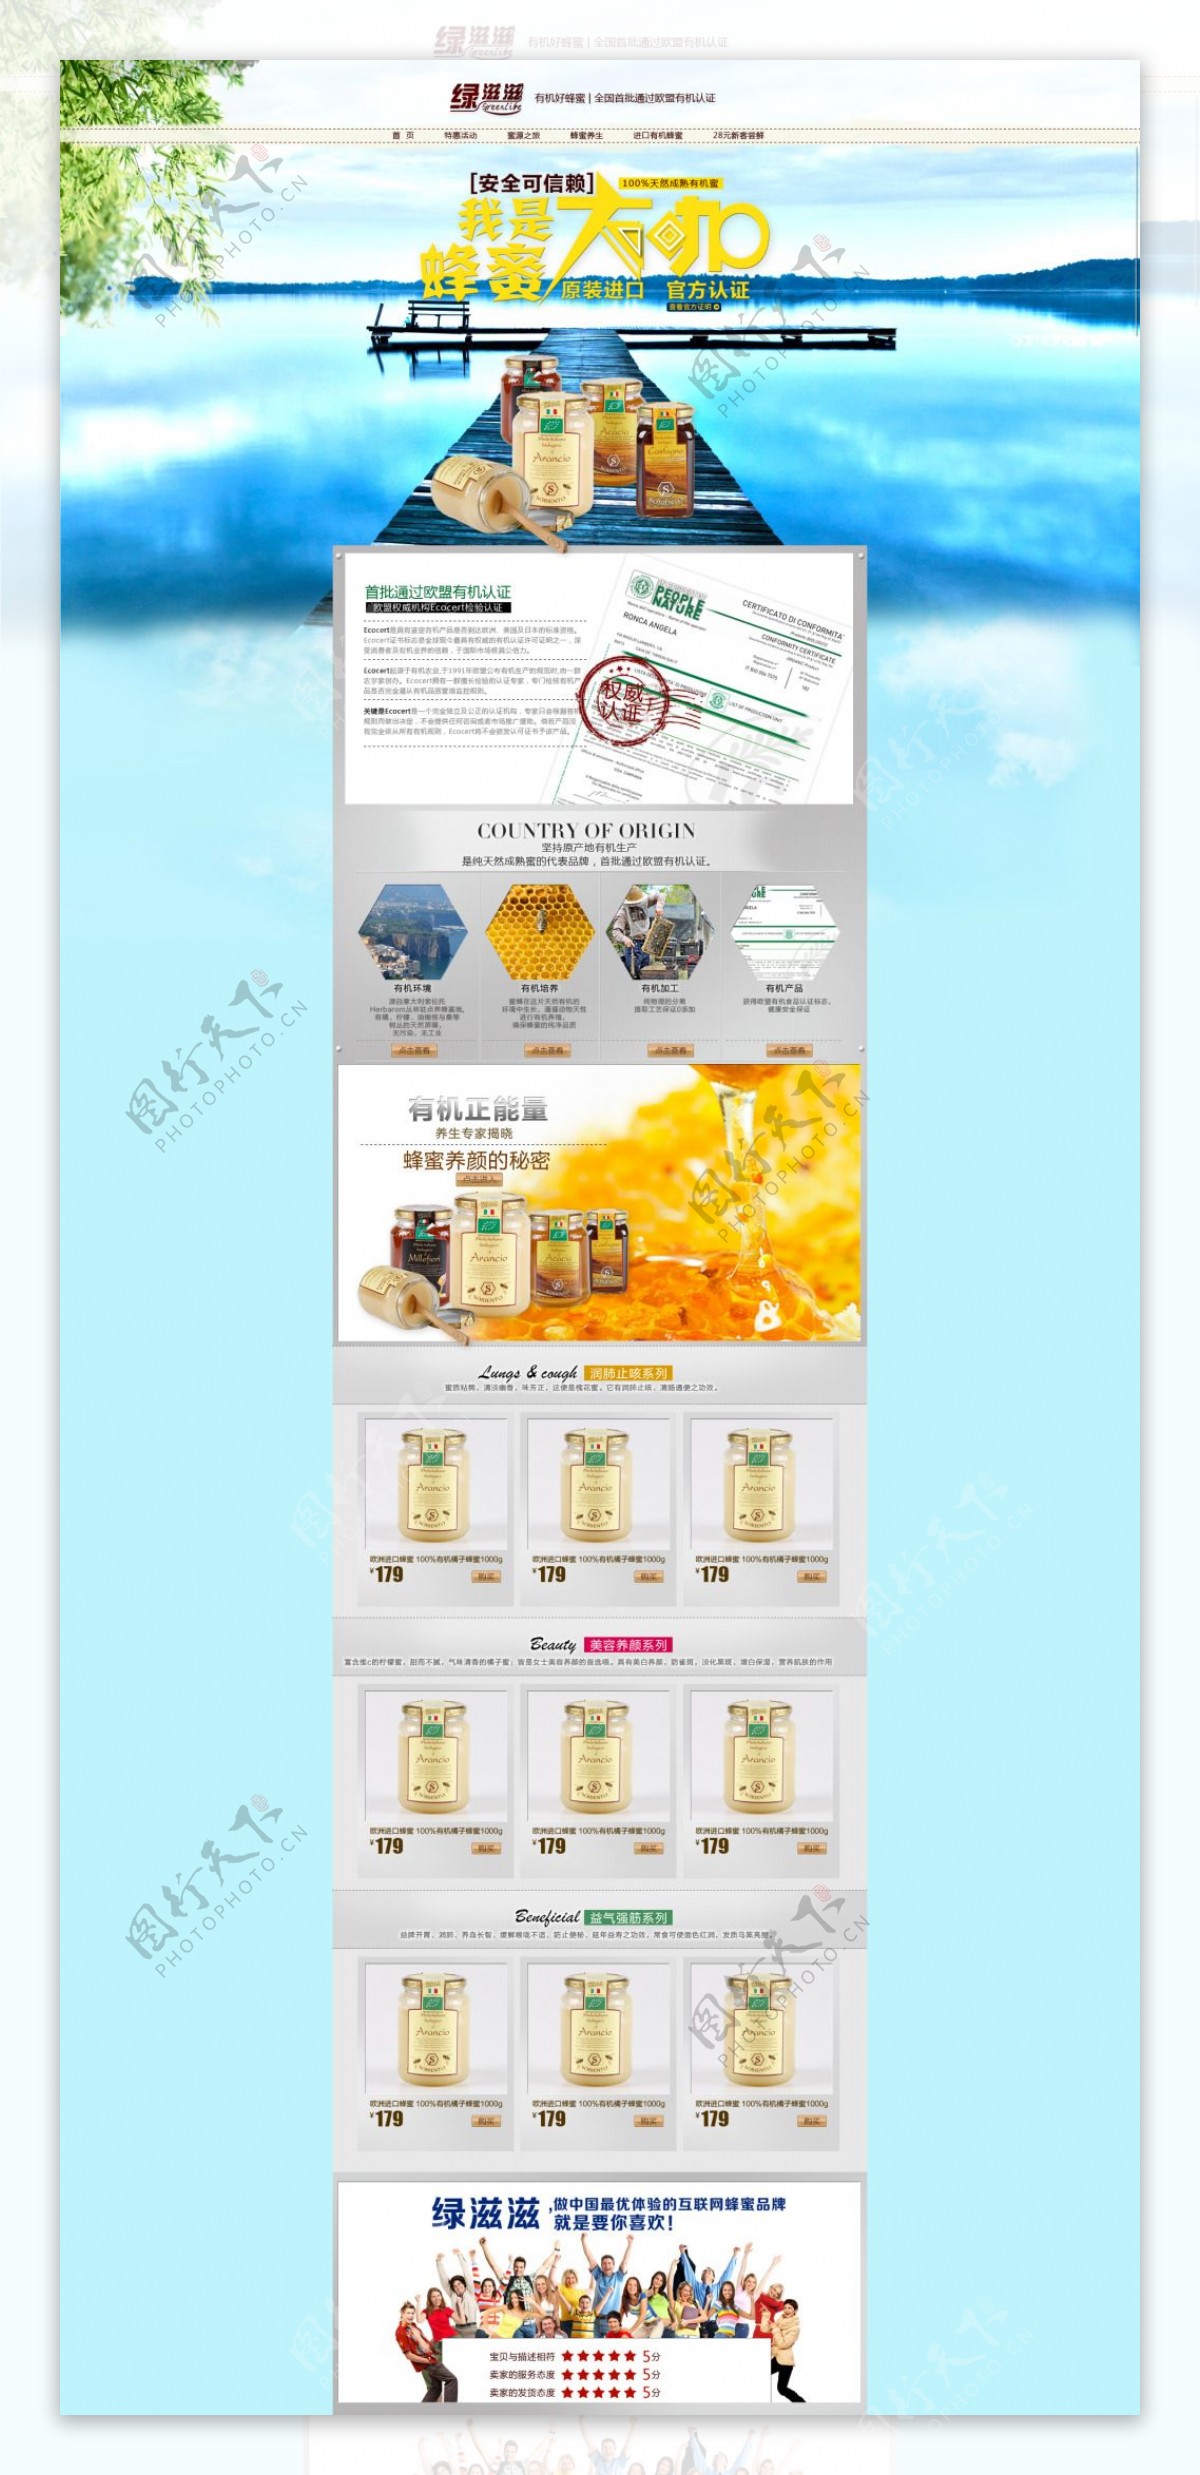 淘宝蜂蜜促销页面设计PSD素材